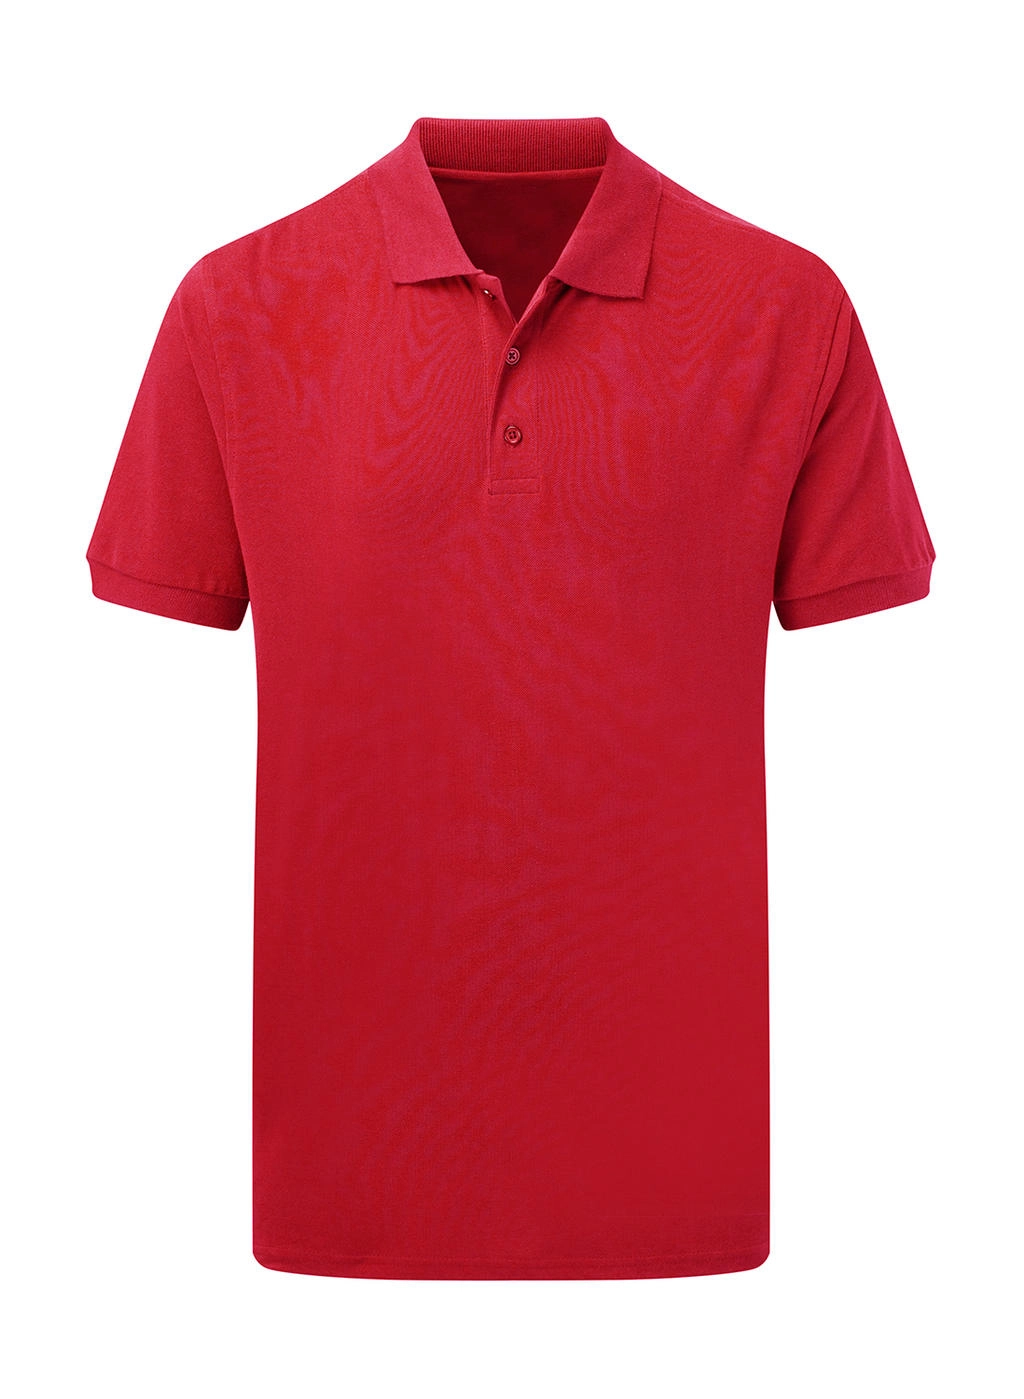 Cotton Polo Men zum Besticken und Bedrucken in der Farbe Red mit Ihren Logo, Schriftzug oder Motiv.